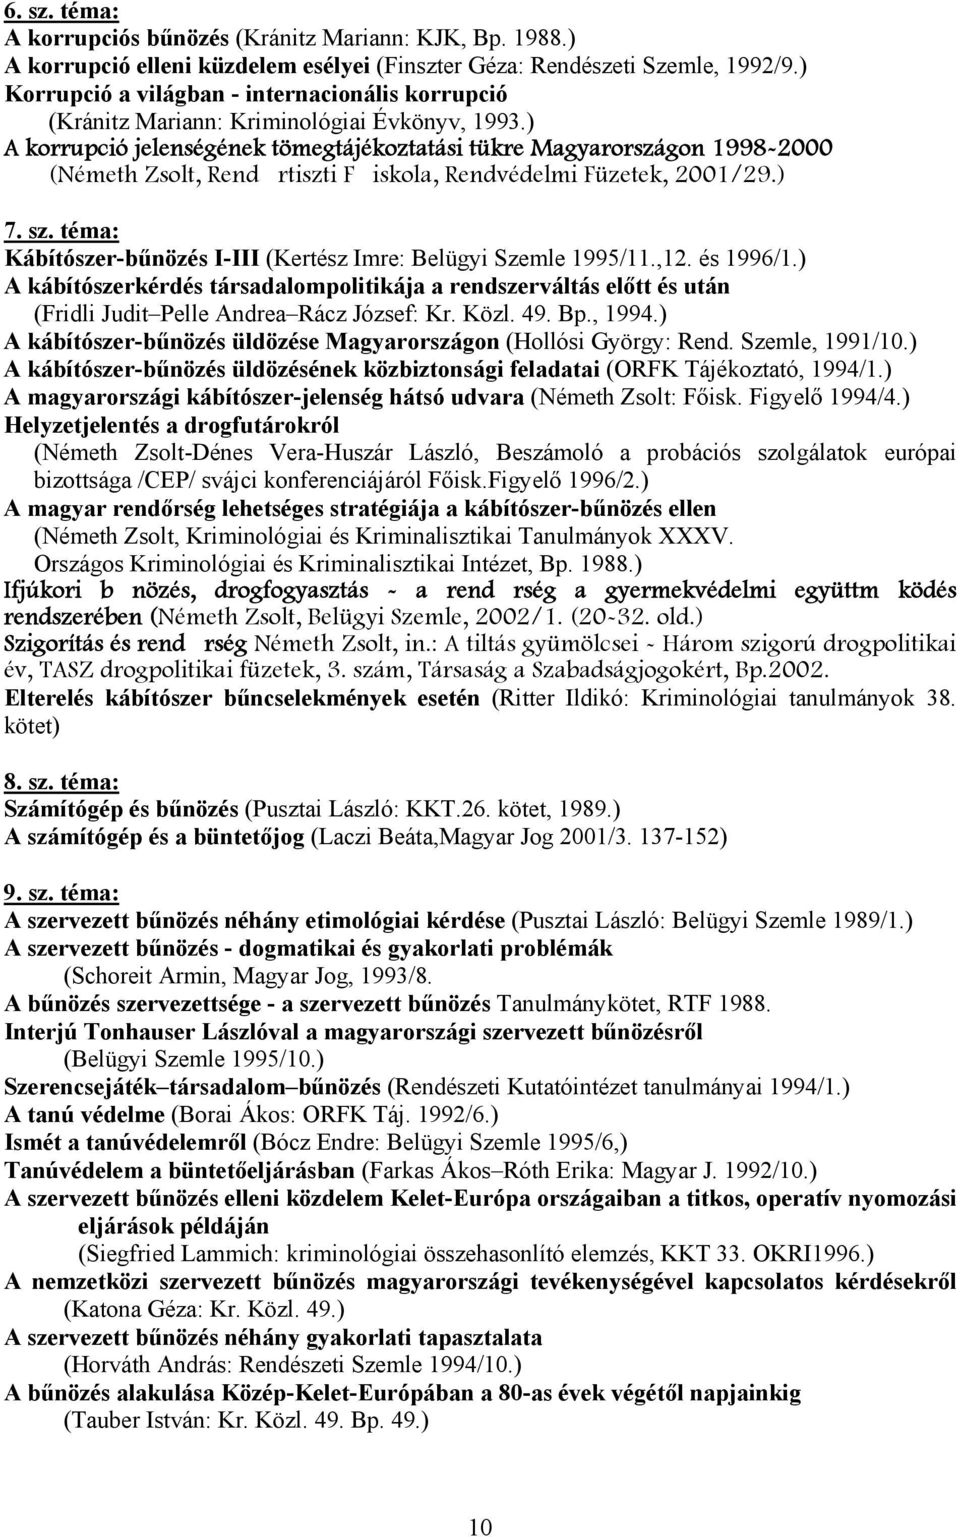 ) A korrupció jelenségének tömegtájékoztatási tükre Magyarországon 1998-2000 (Németh Zsolt, Rendrtiszti Fiskola, Rendvédelmi Füzetek, 2001/29.) 7. sz.